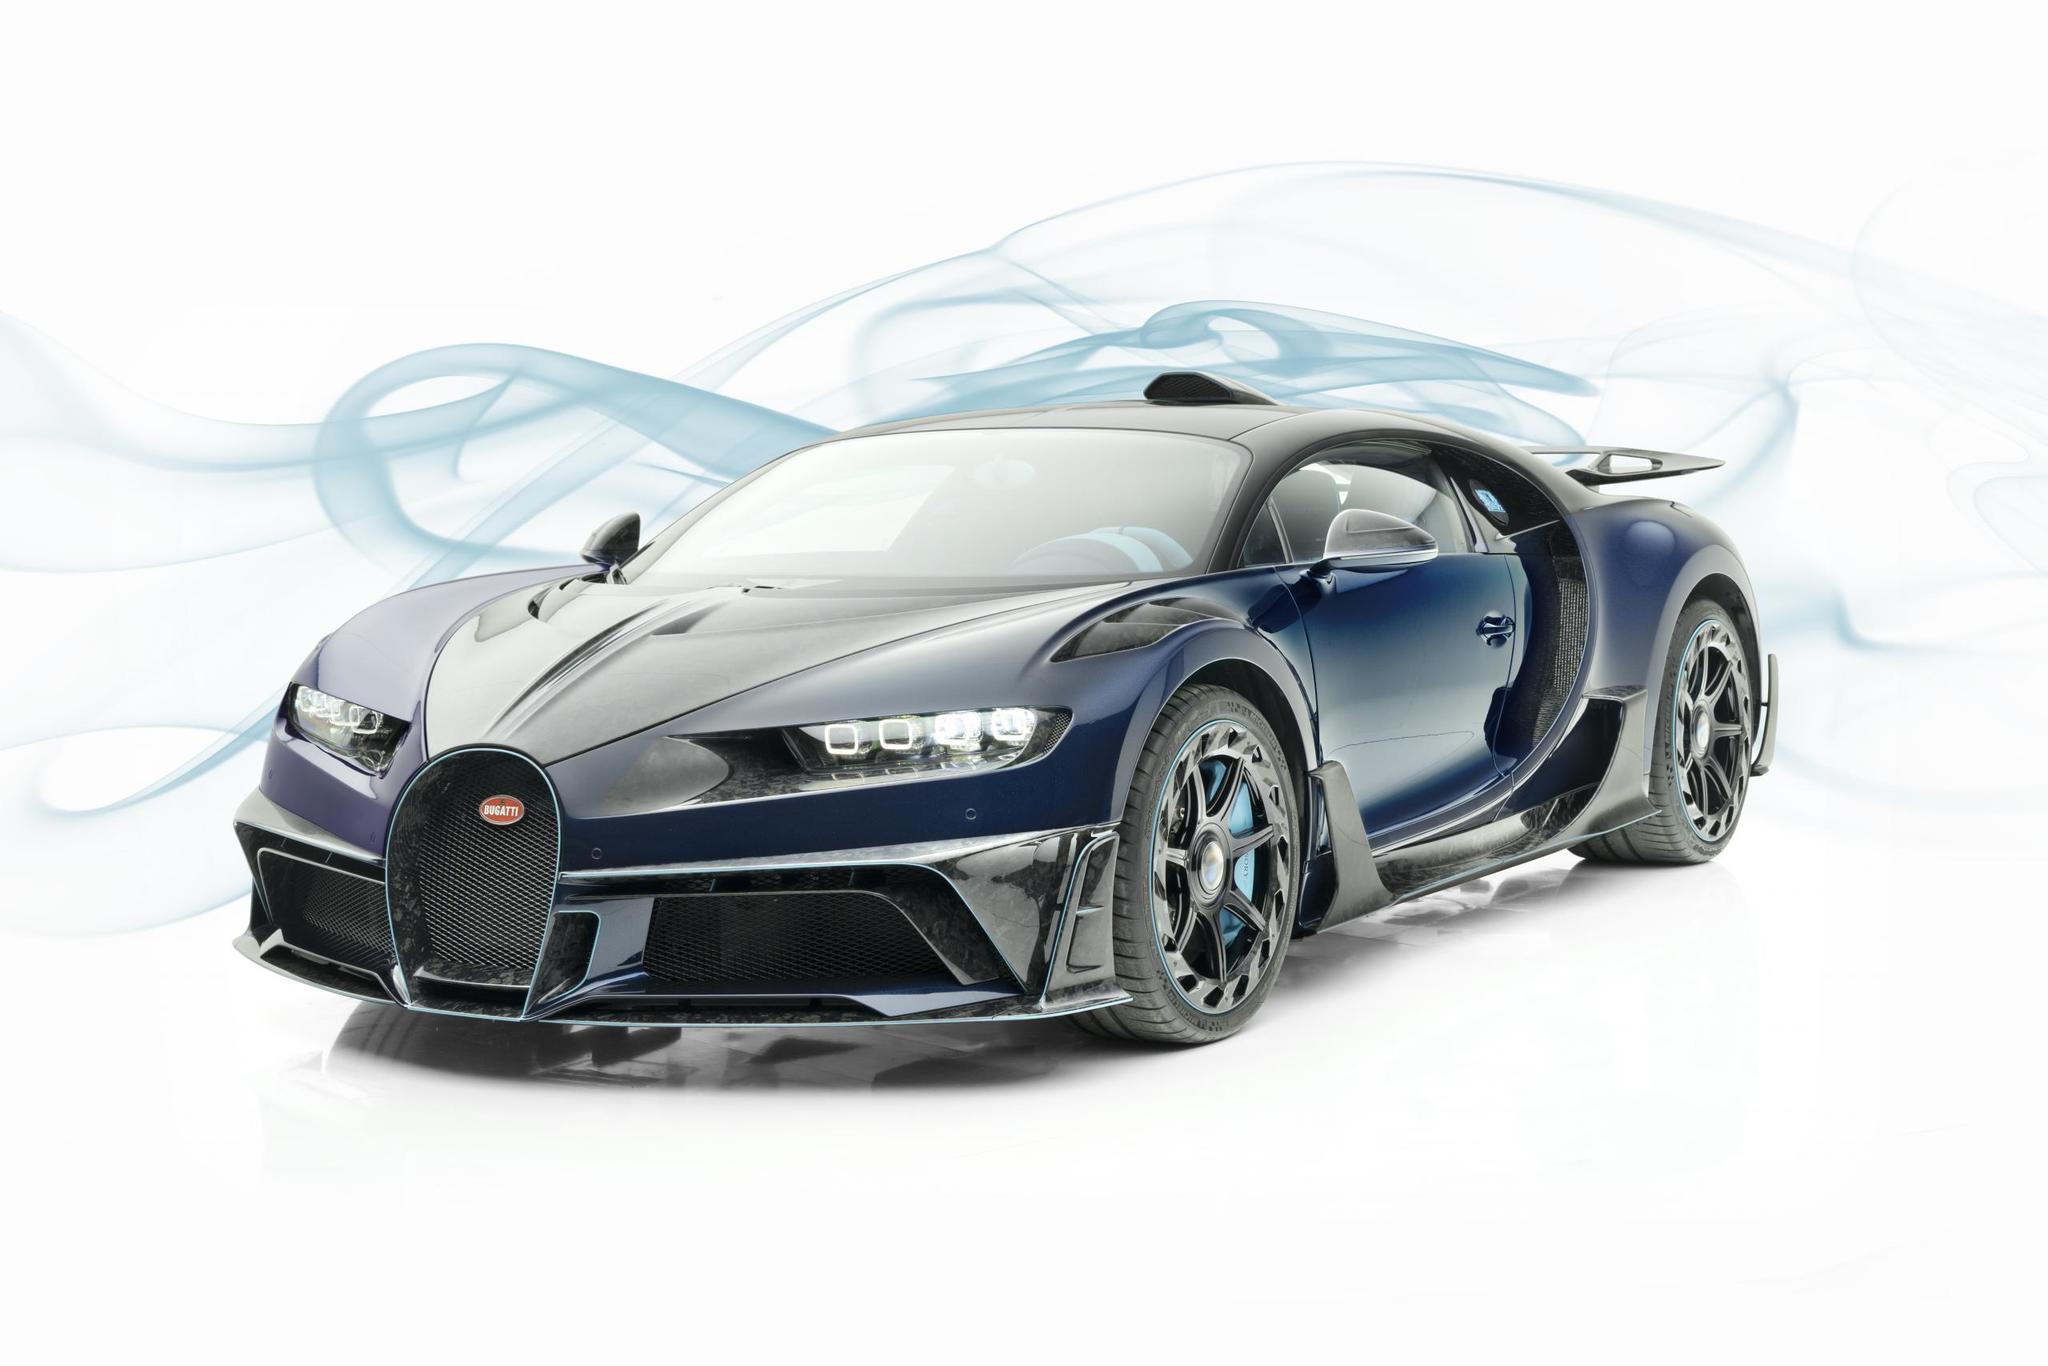 Mansory body kit for Bugatti Chiron new model